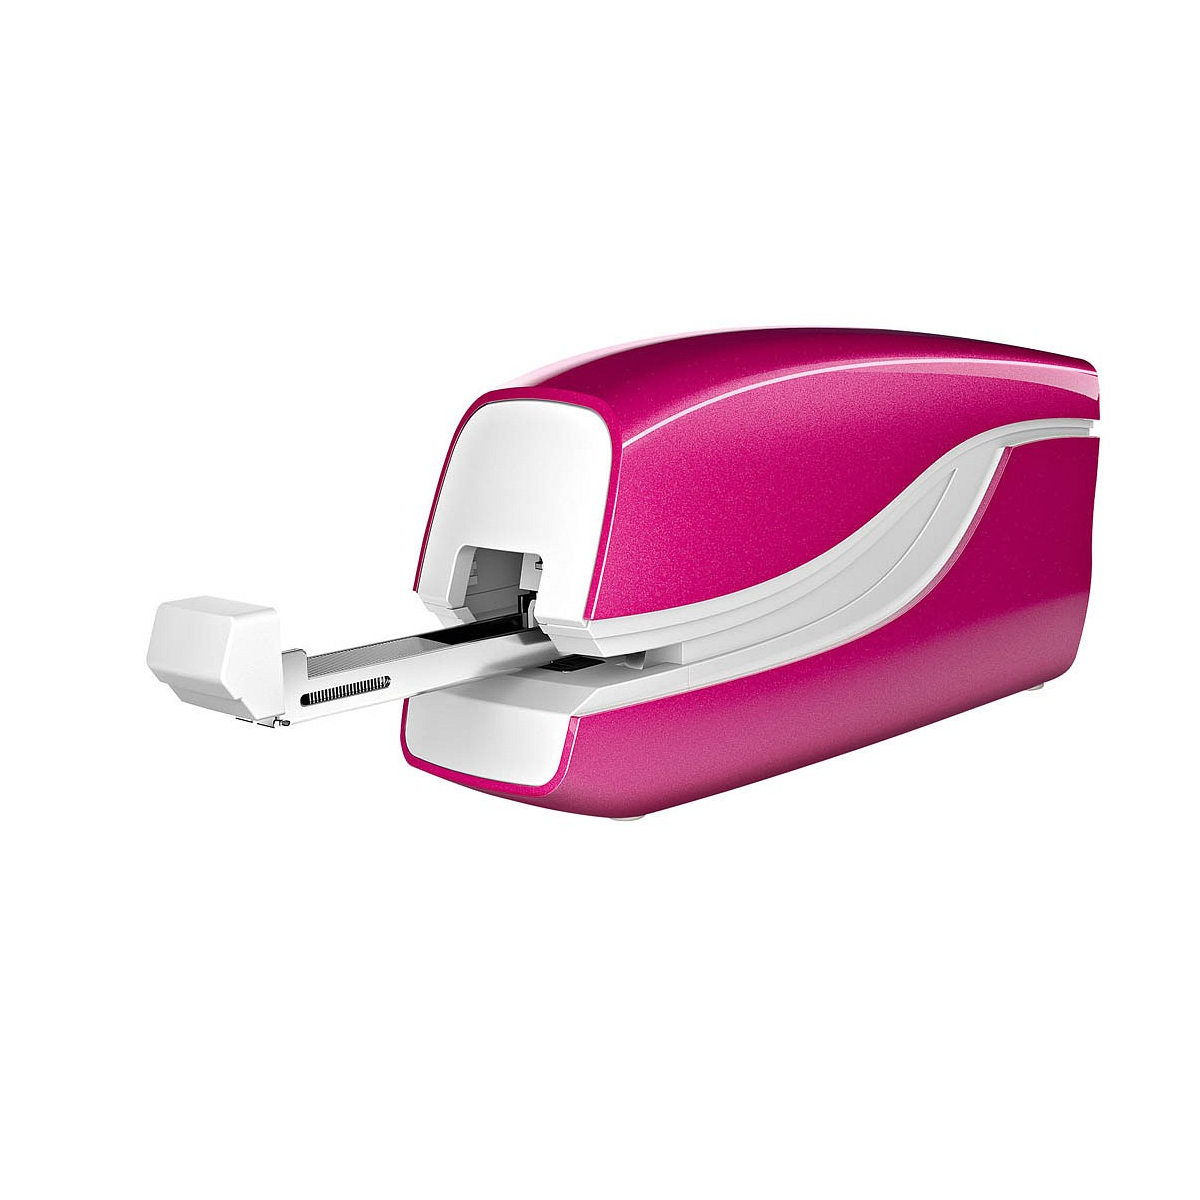 LEITZ Electric Stapler WOW Elektrohefter, Pink